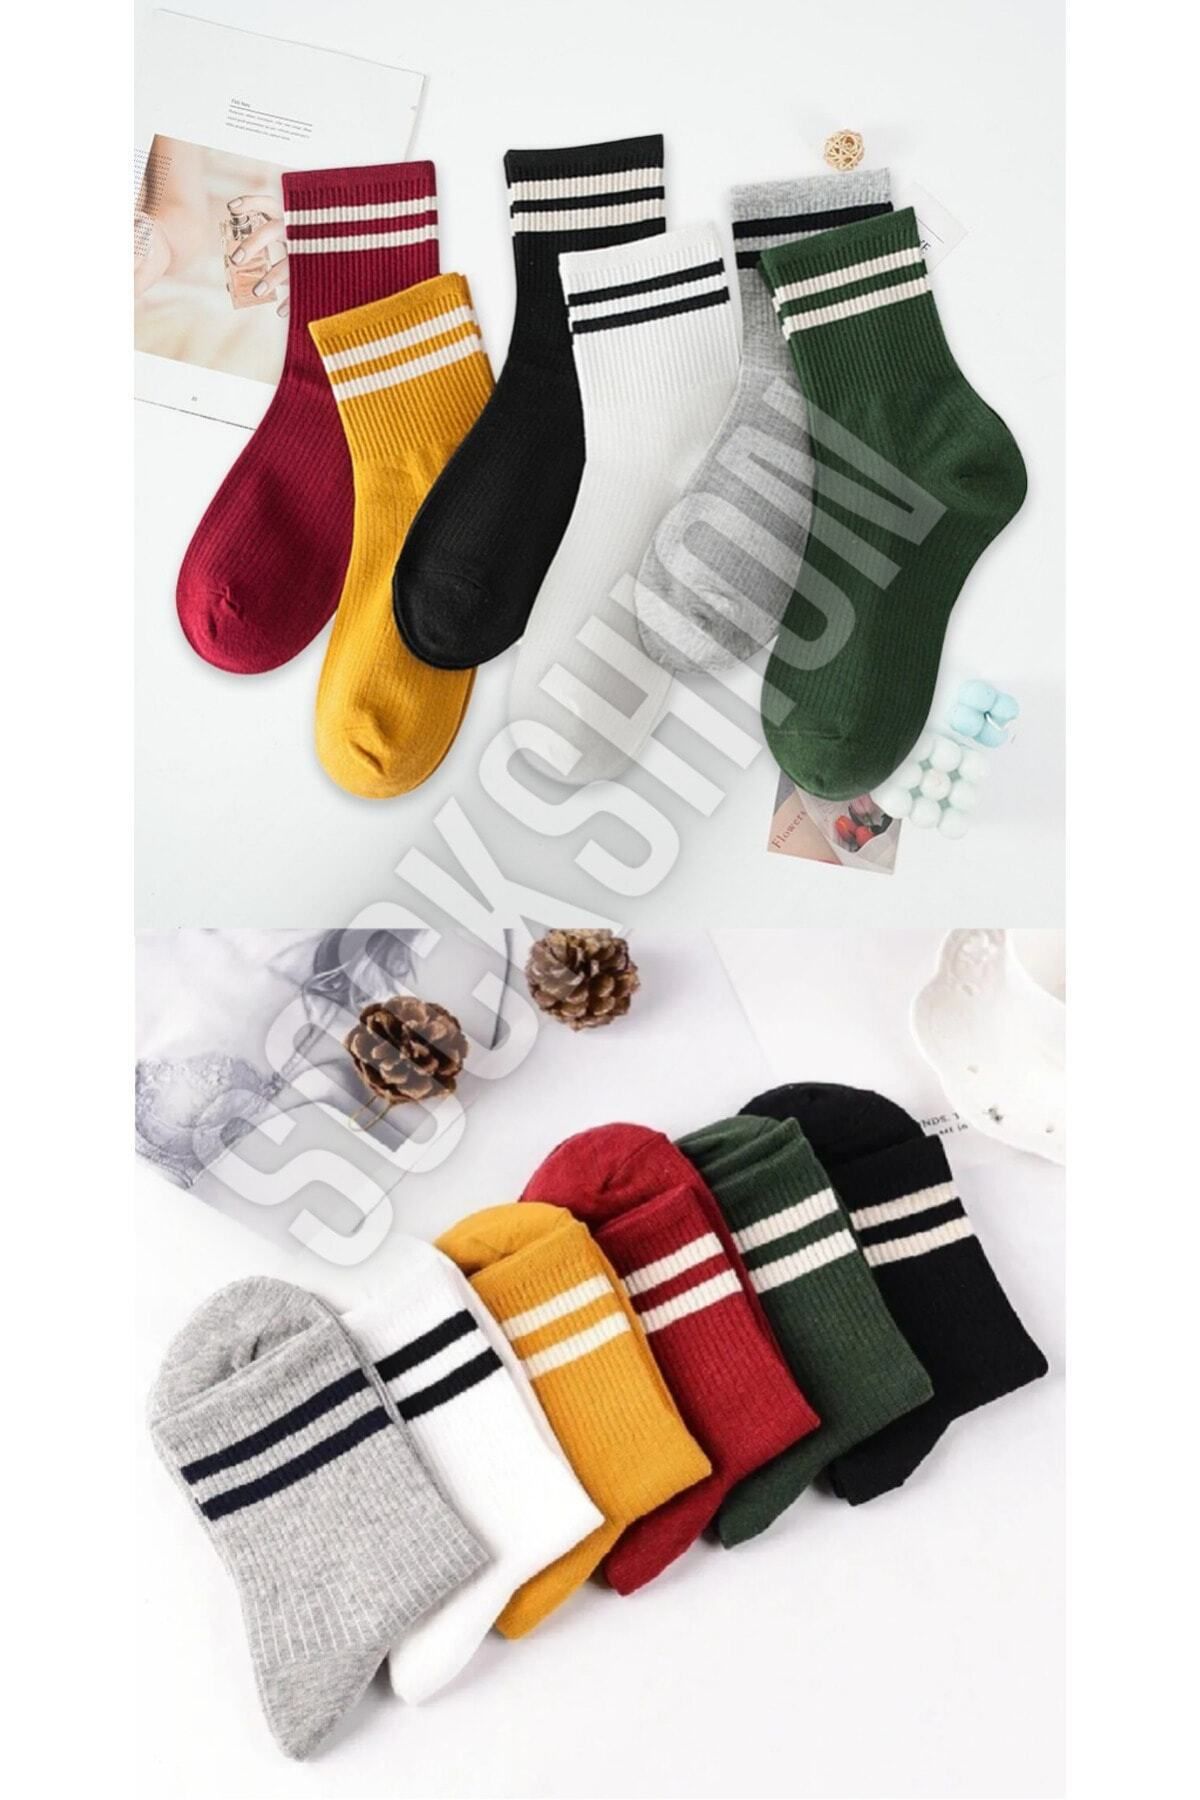 SOCKSHION Kadın 6'lı Karışık Renkli Çizgili Tenis Çorabı - Stilinizi Renklendirin - 6 Çift